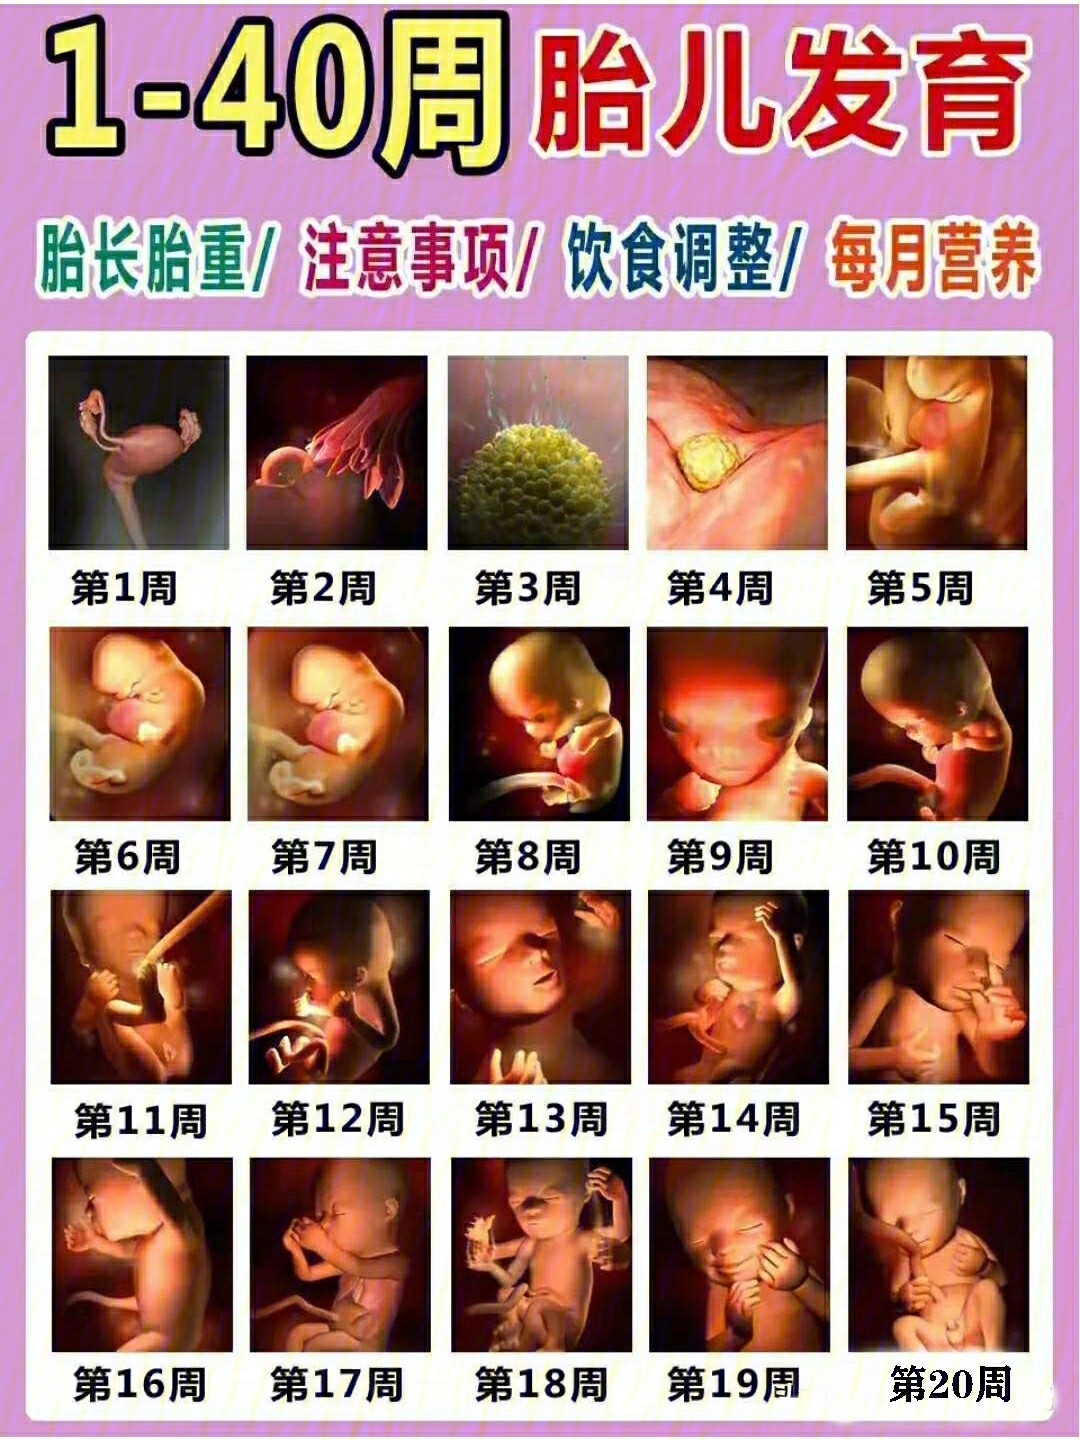 胎儿性别发育过程图图片